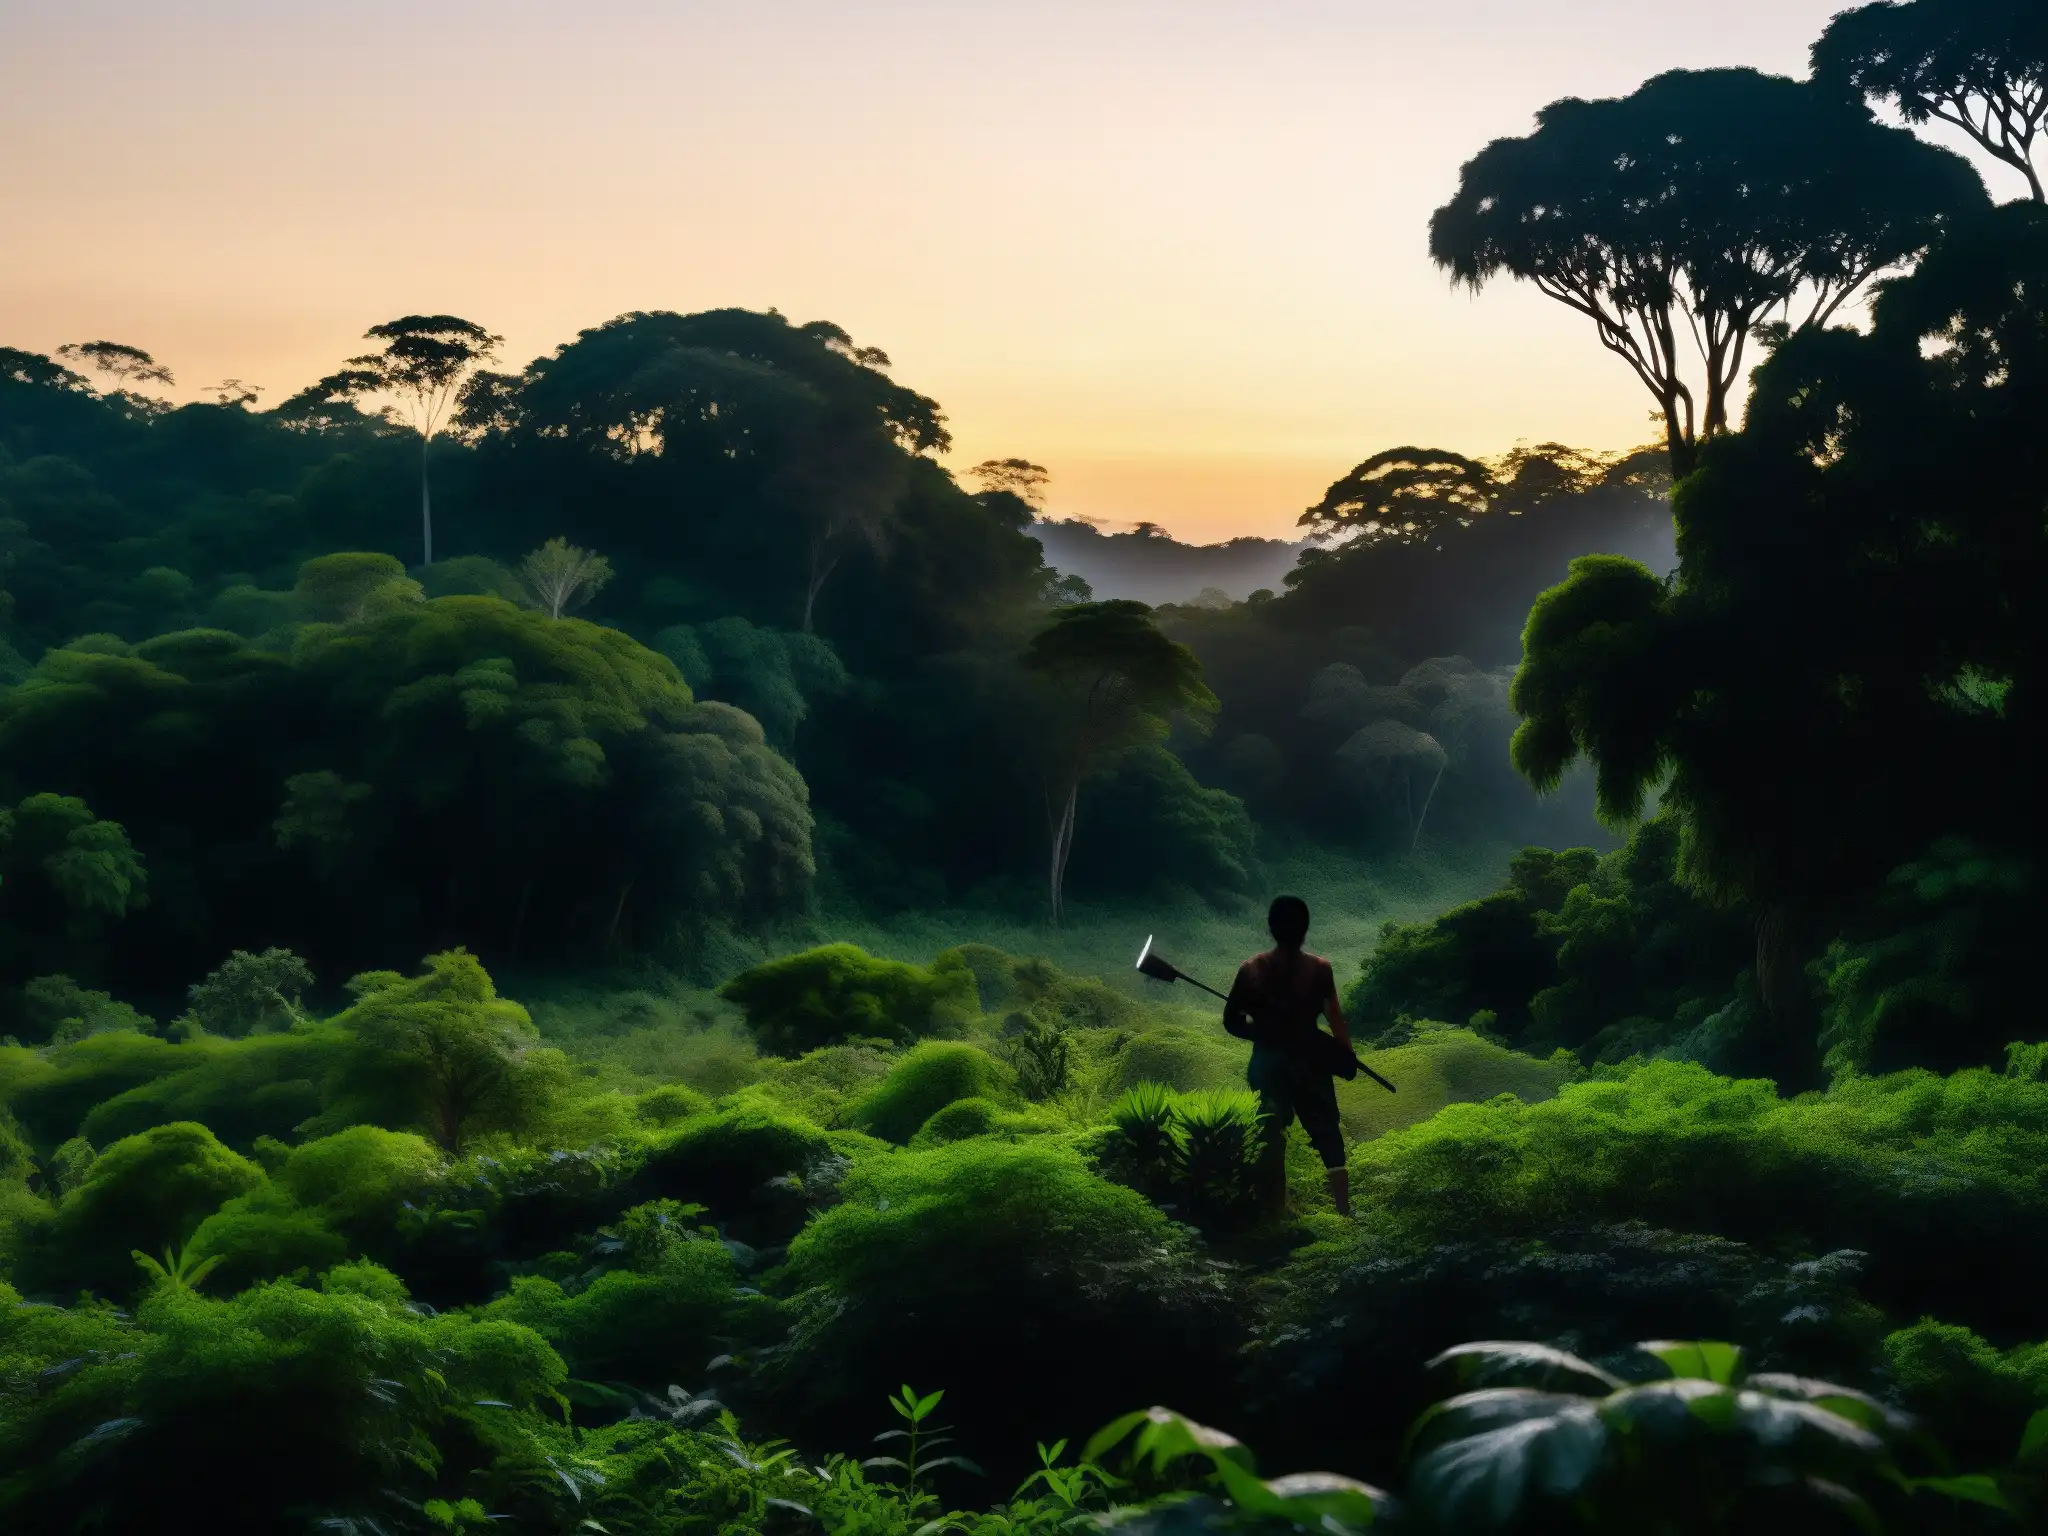 Silueta de El Pombero en la exuberante selva paraguaya al atardecer, creando una atmósfera enigmática y cautivadora